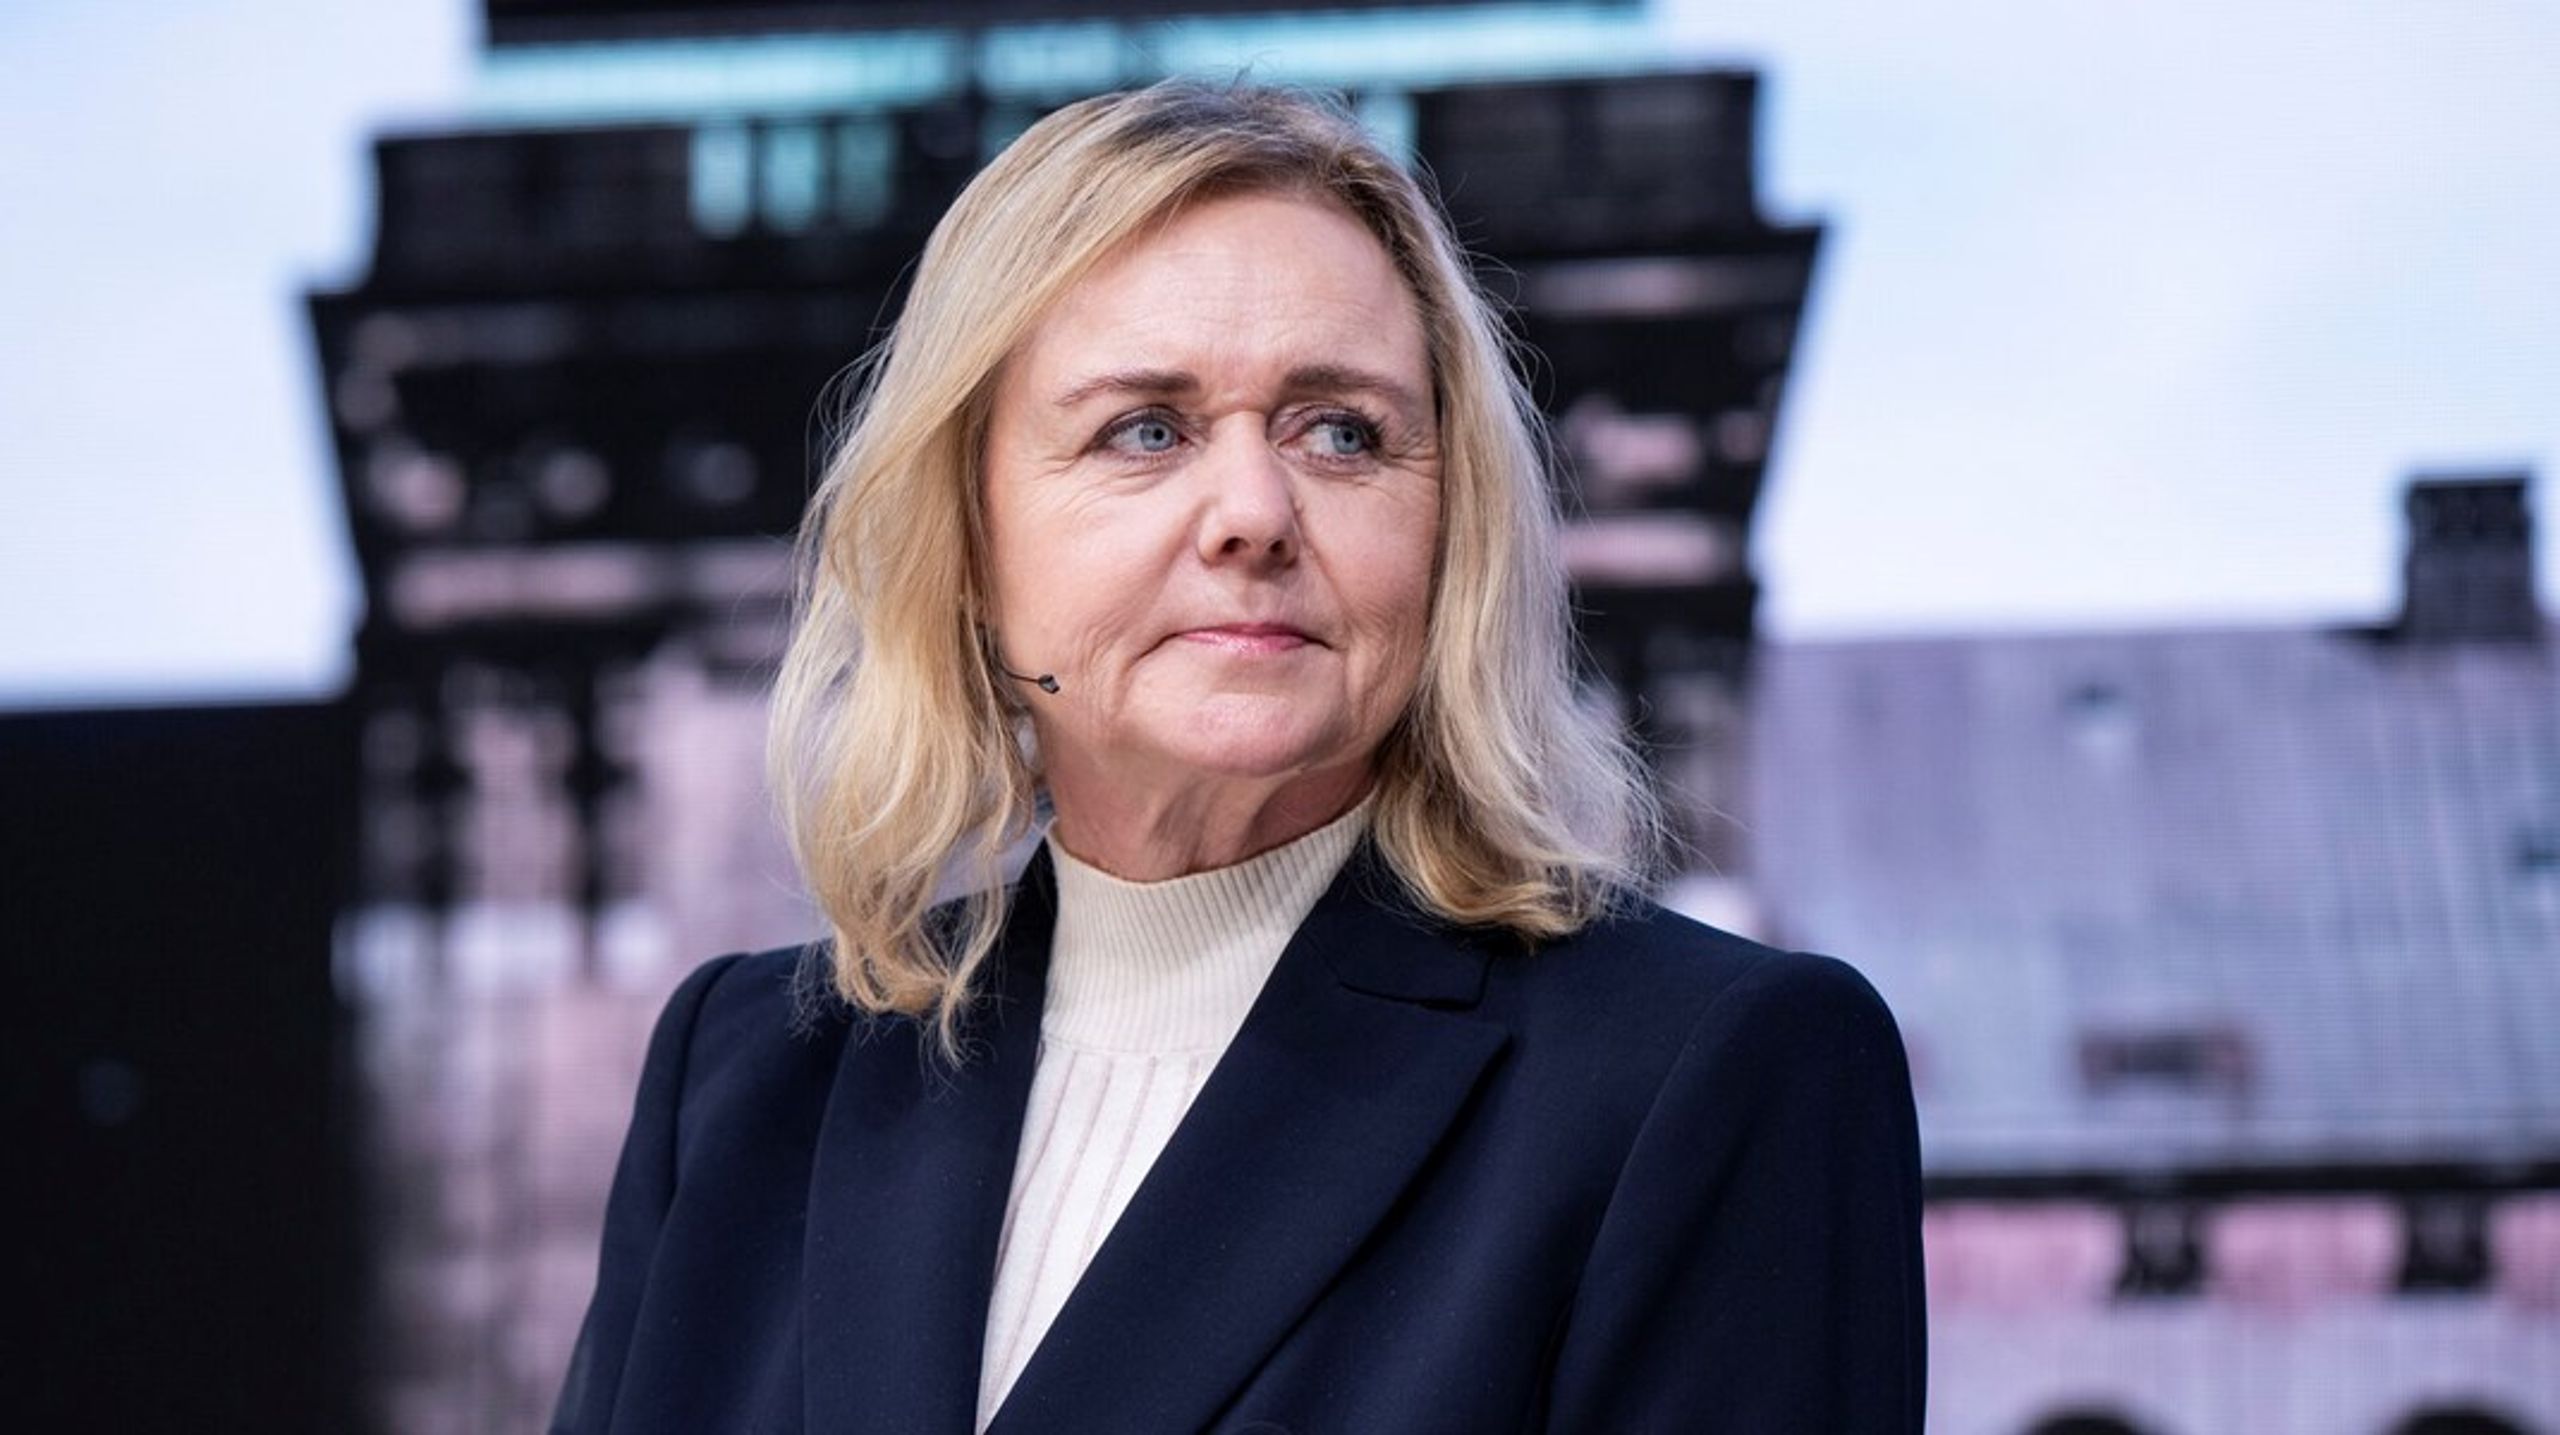 Efter Søren Papes bortgang er Mona Juul valgt som politisk leder for Konservative af partiets folketingsgruppe. Denne uge stiller hun op uden modkandidat til posten som partiformand.